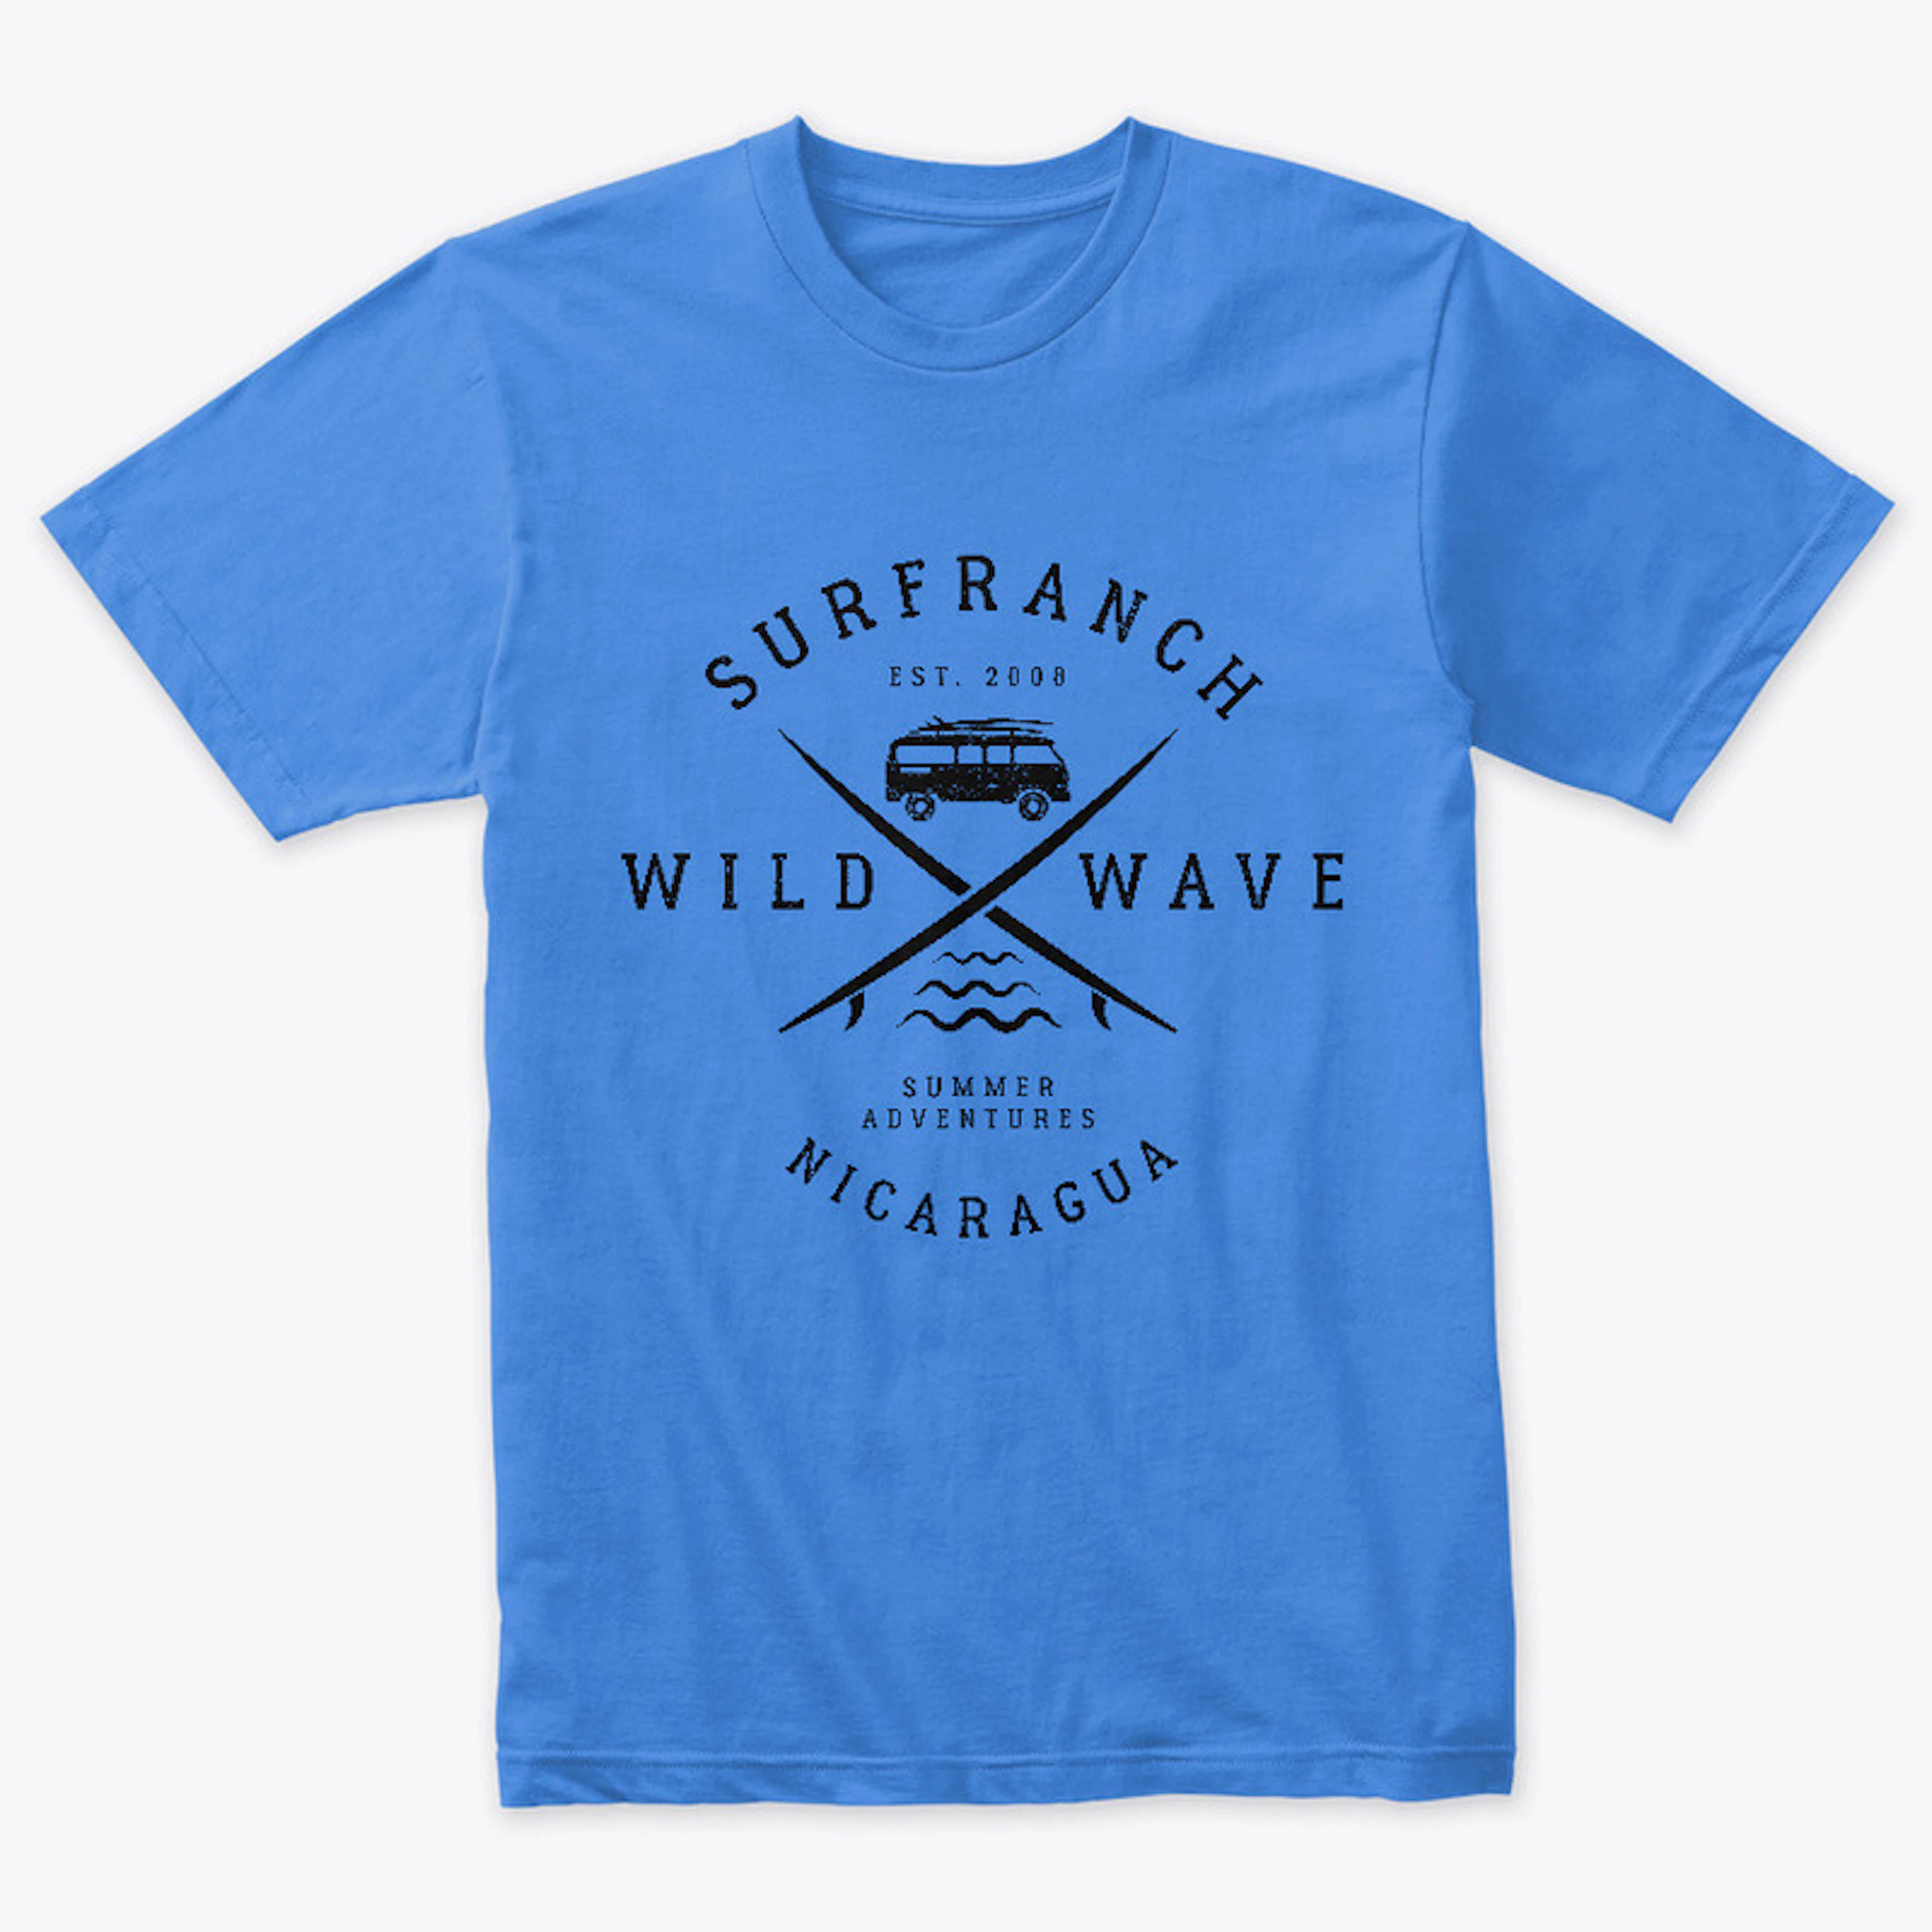 Wild Wave Surf Ranch Black Logo